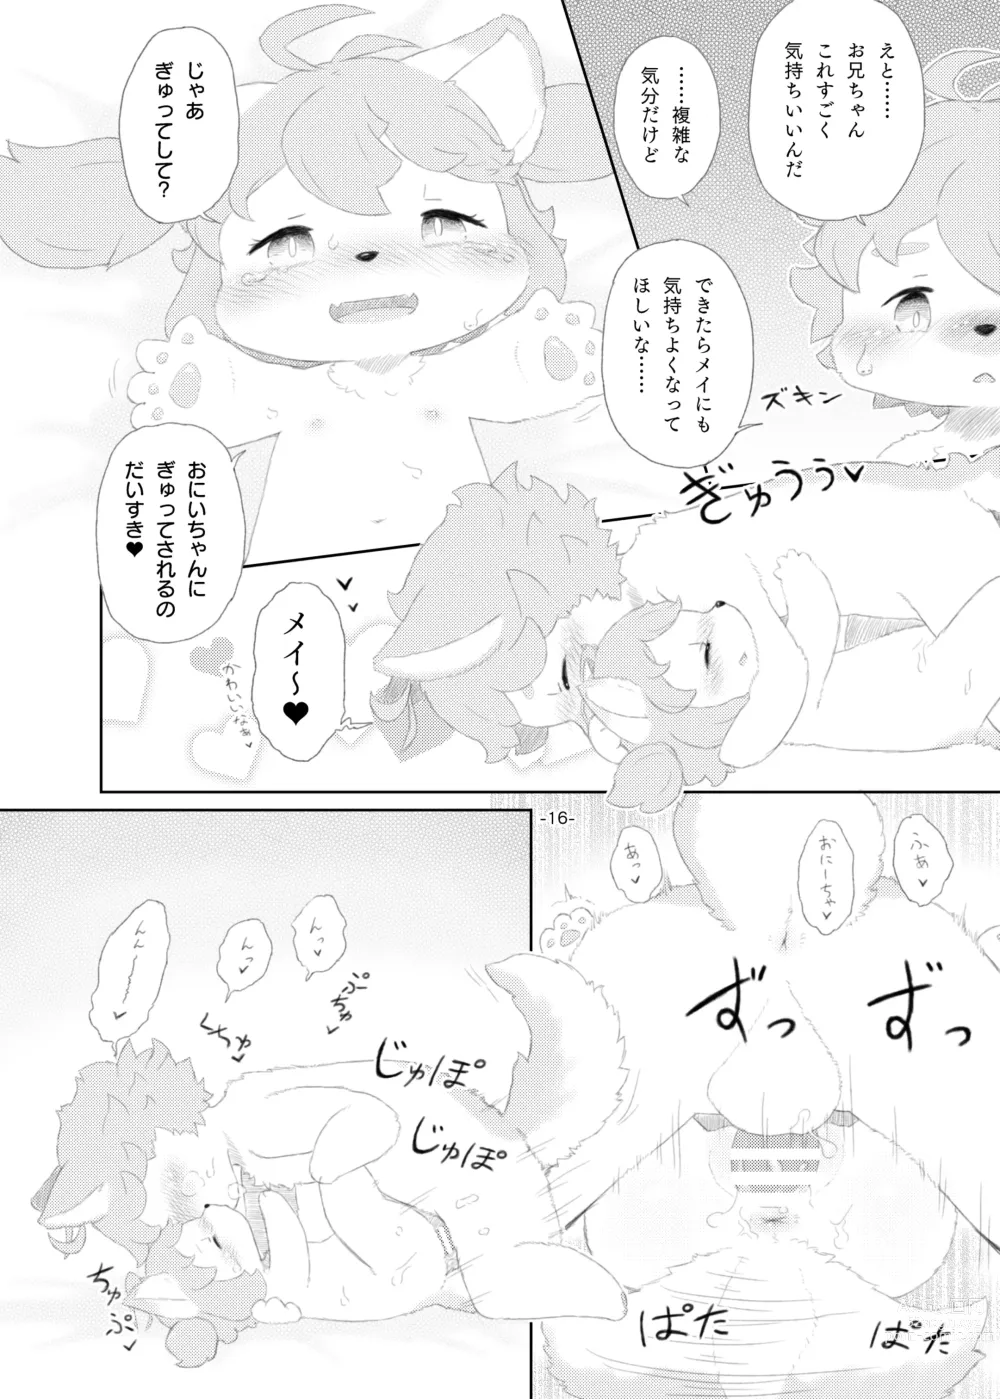 Page 15 of doujinshi Shinai Level 10+